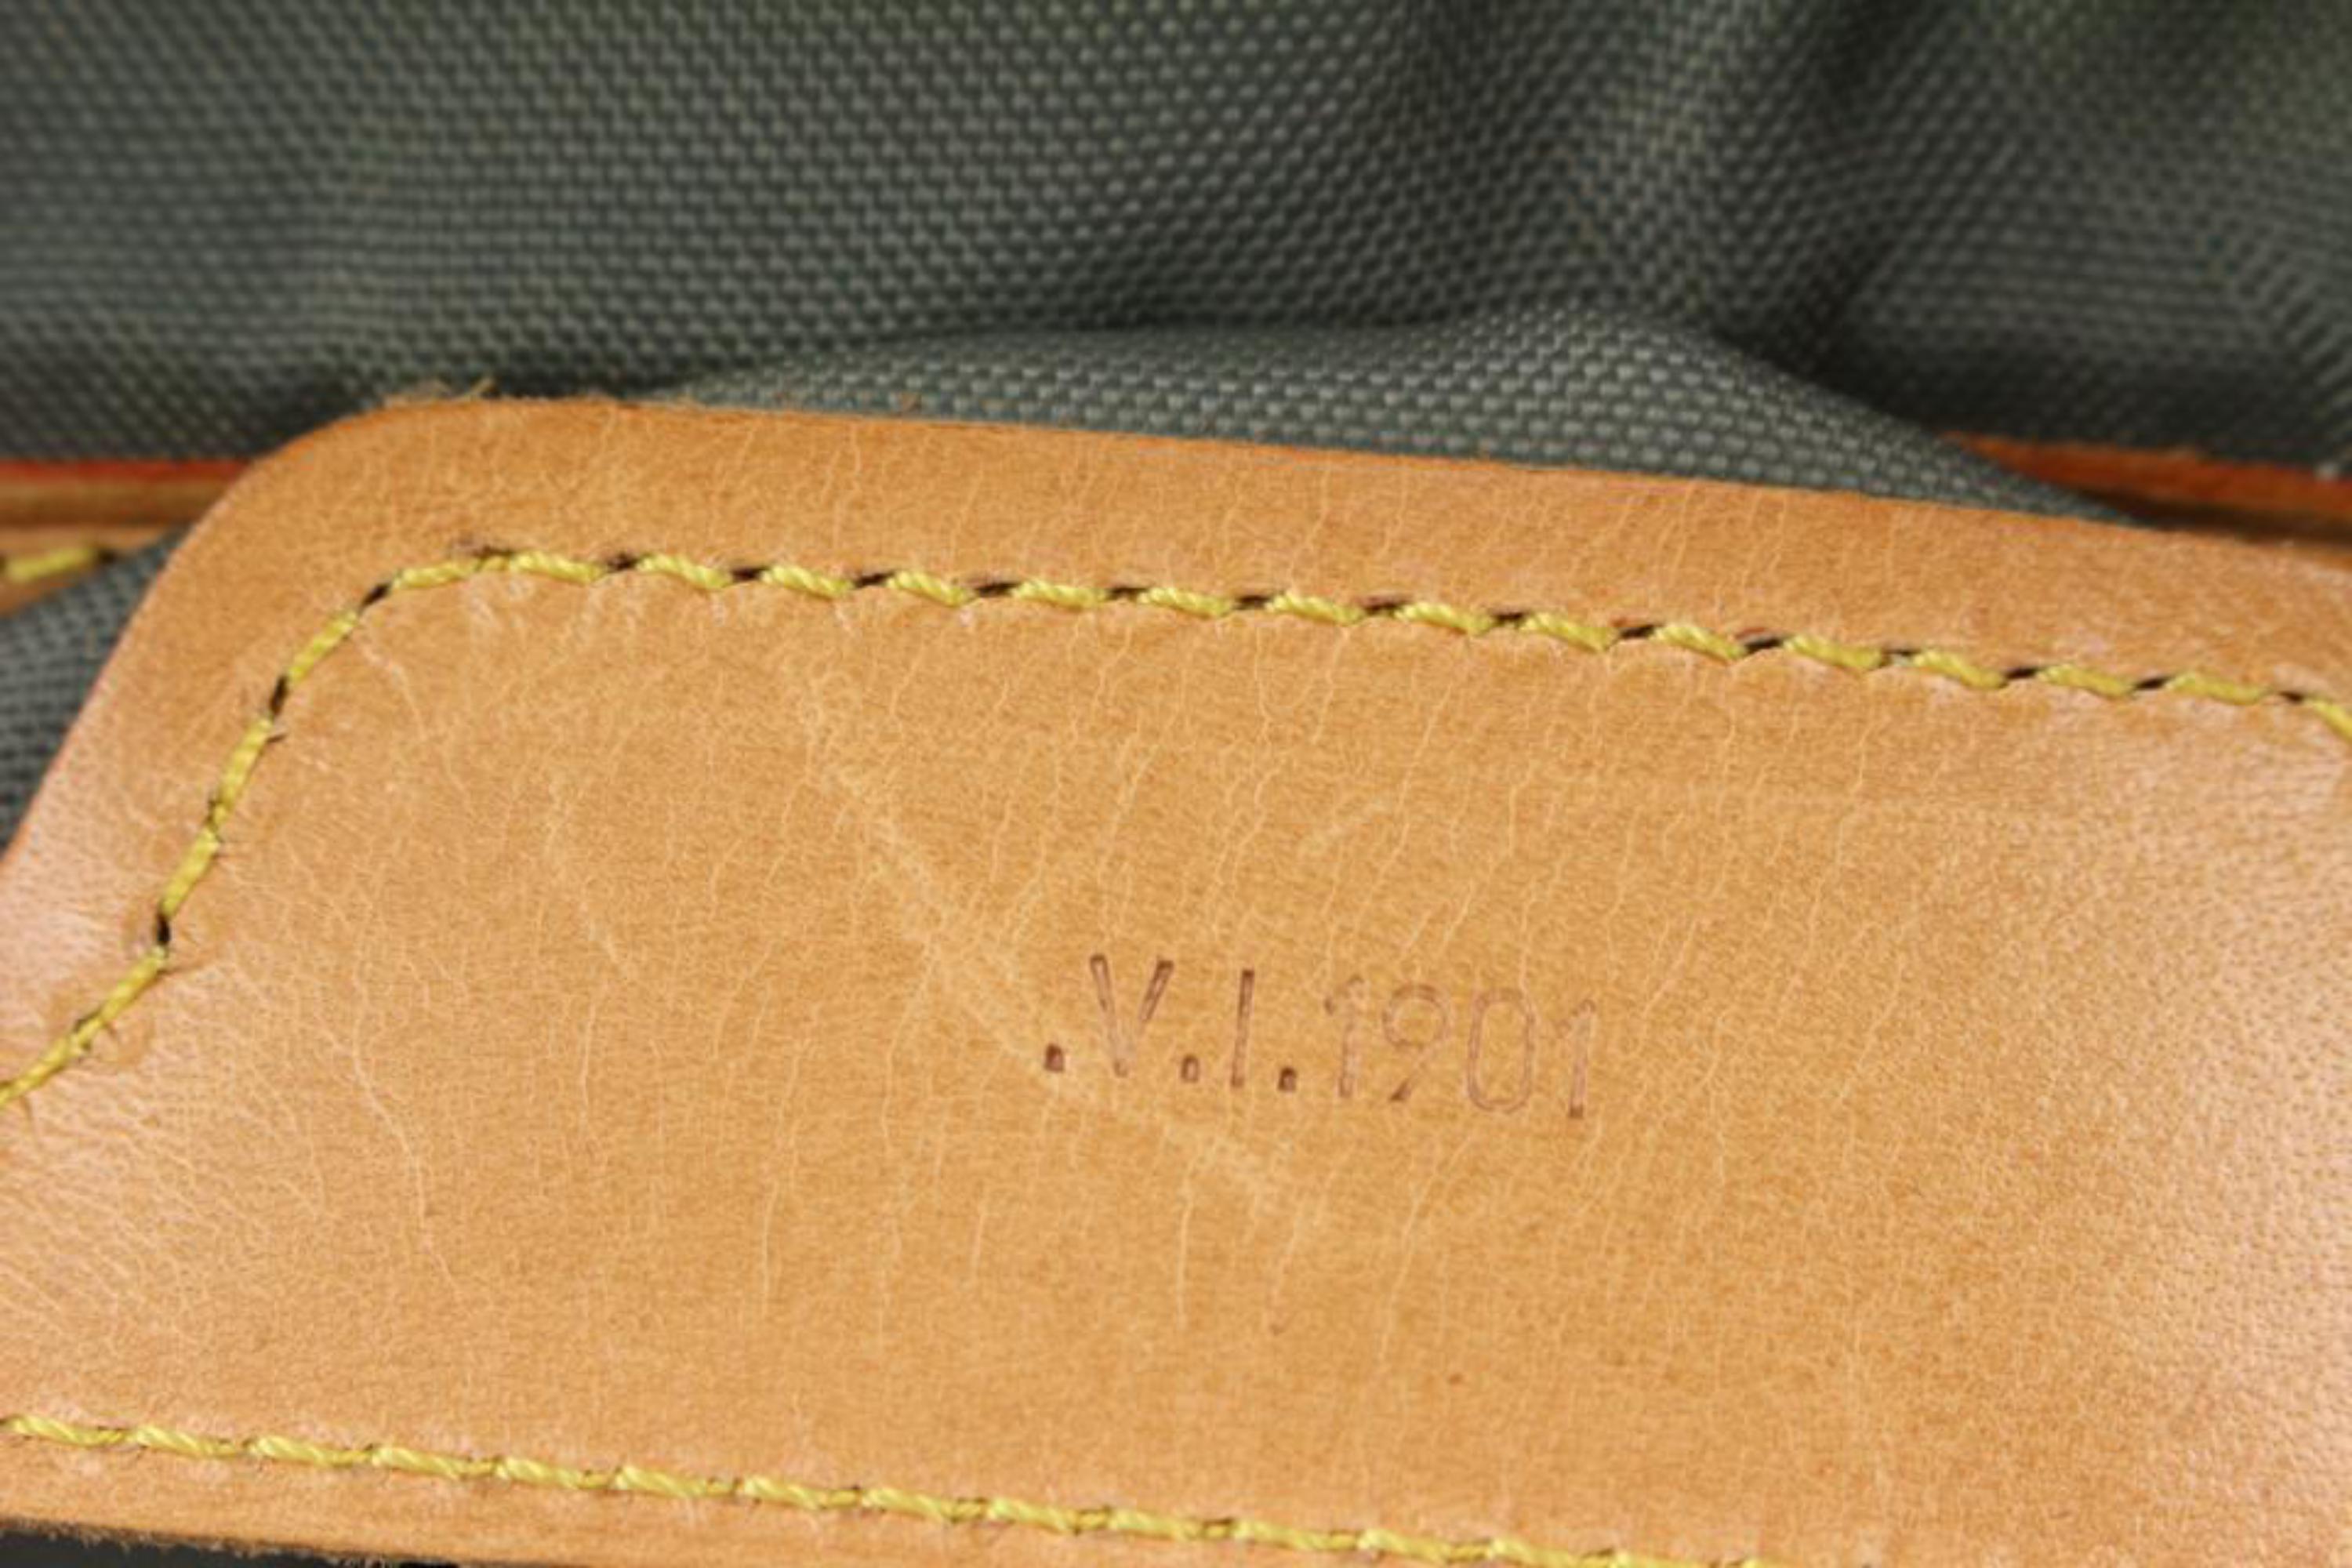 Louis Vuitton Blue LV Cup Sac Plein Air Long Keepall Bag 1015lv43 For Sale 3